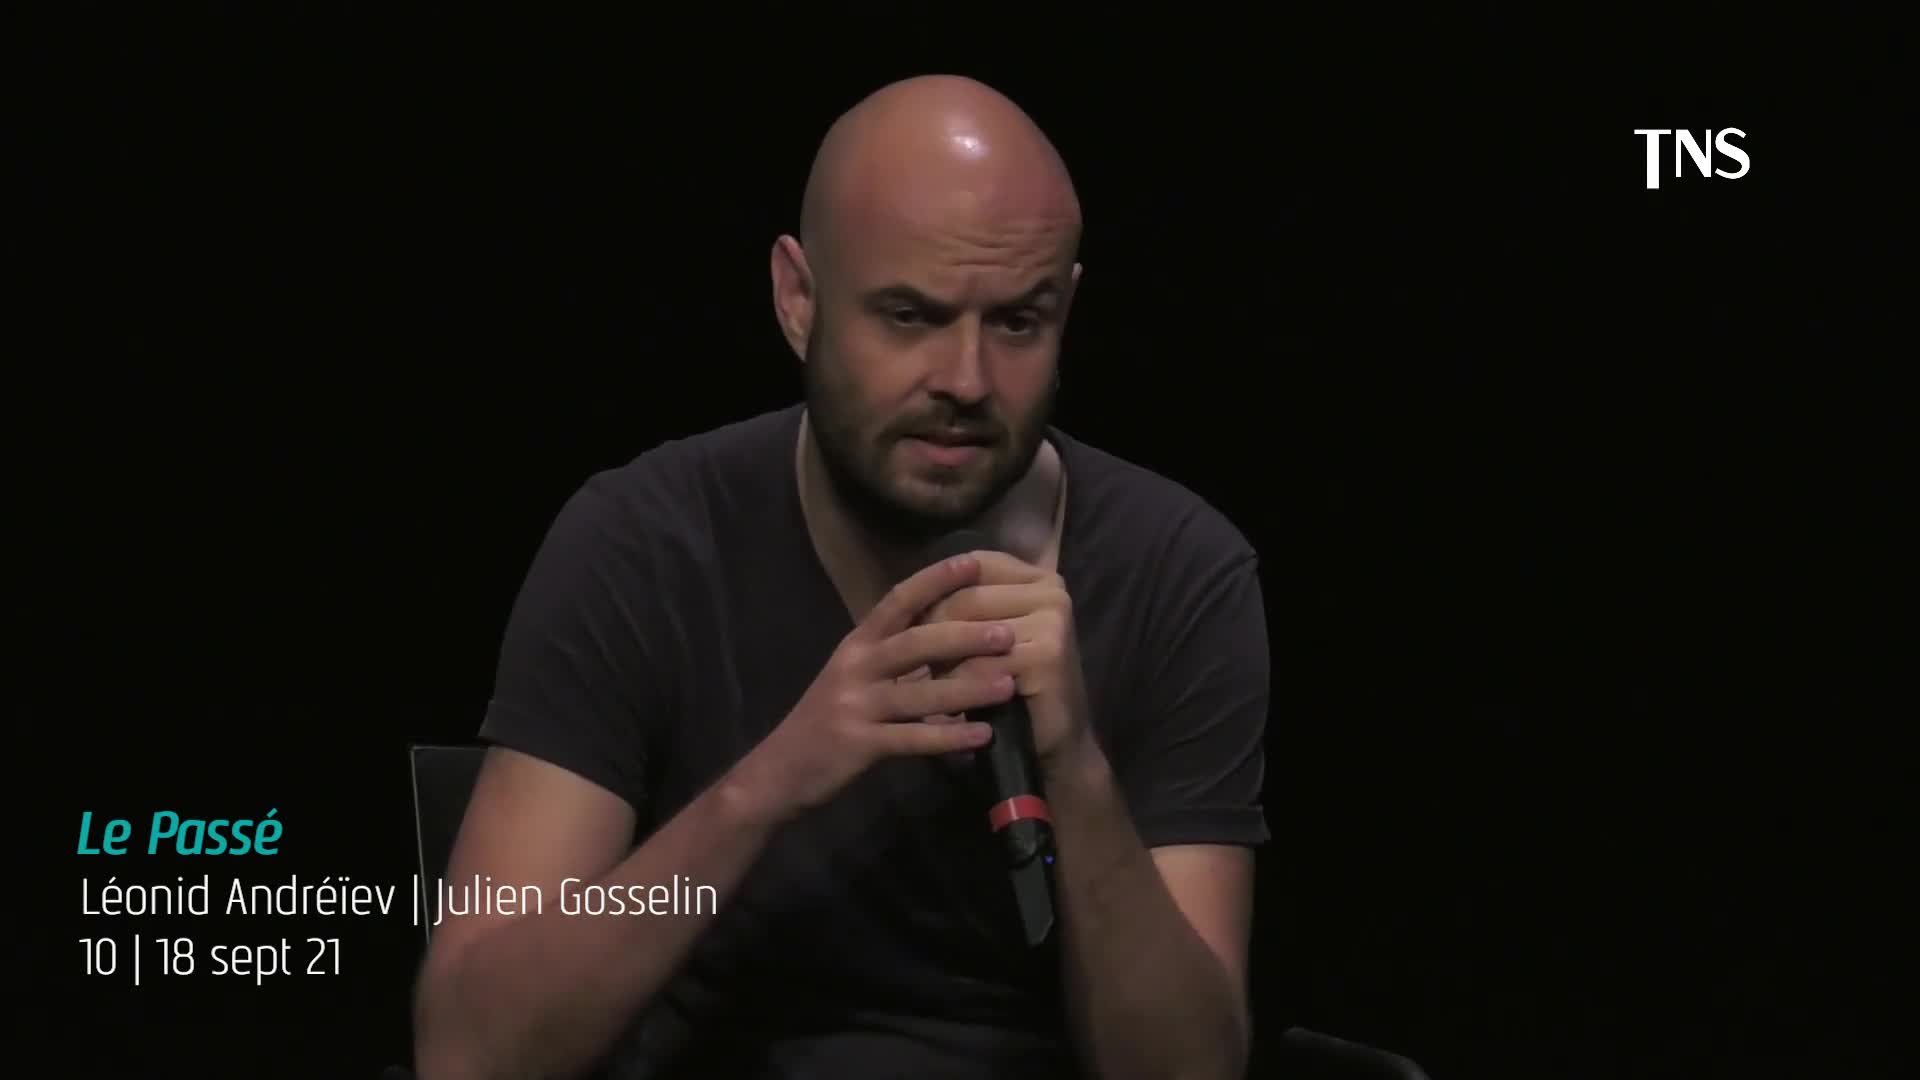 Vidéo "Le Passé" - Léonid Andréïev/Julien Gosselin - Présentation par Julien Gosselin